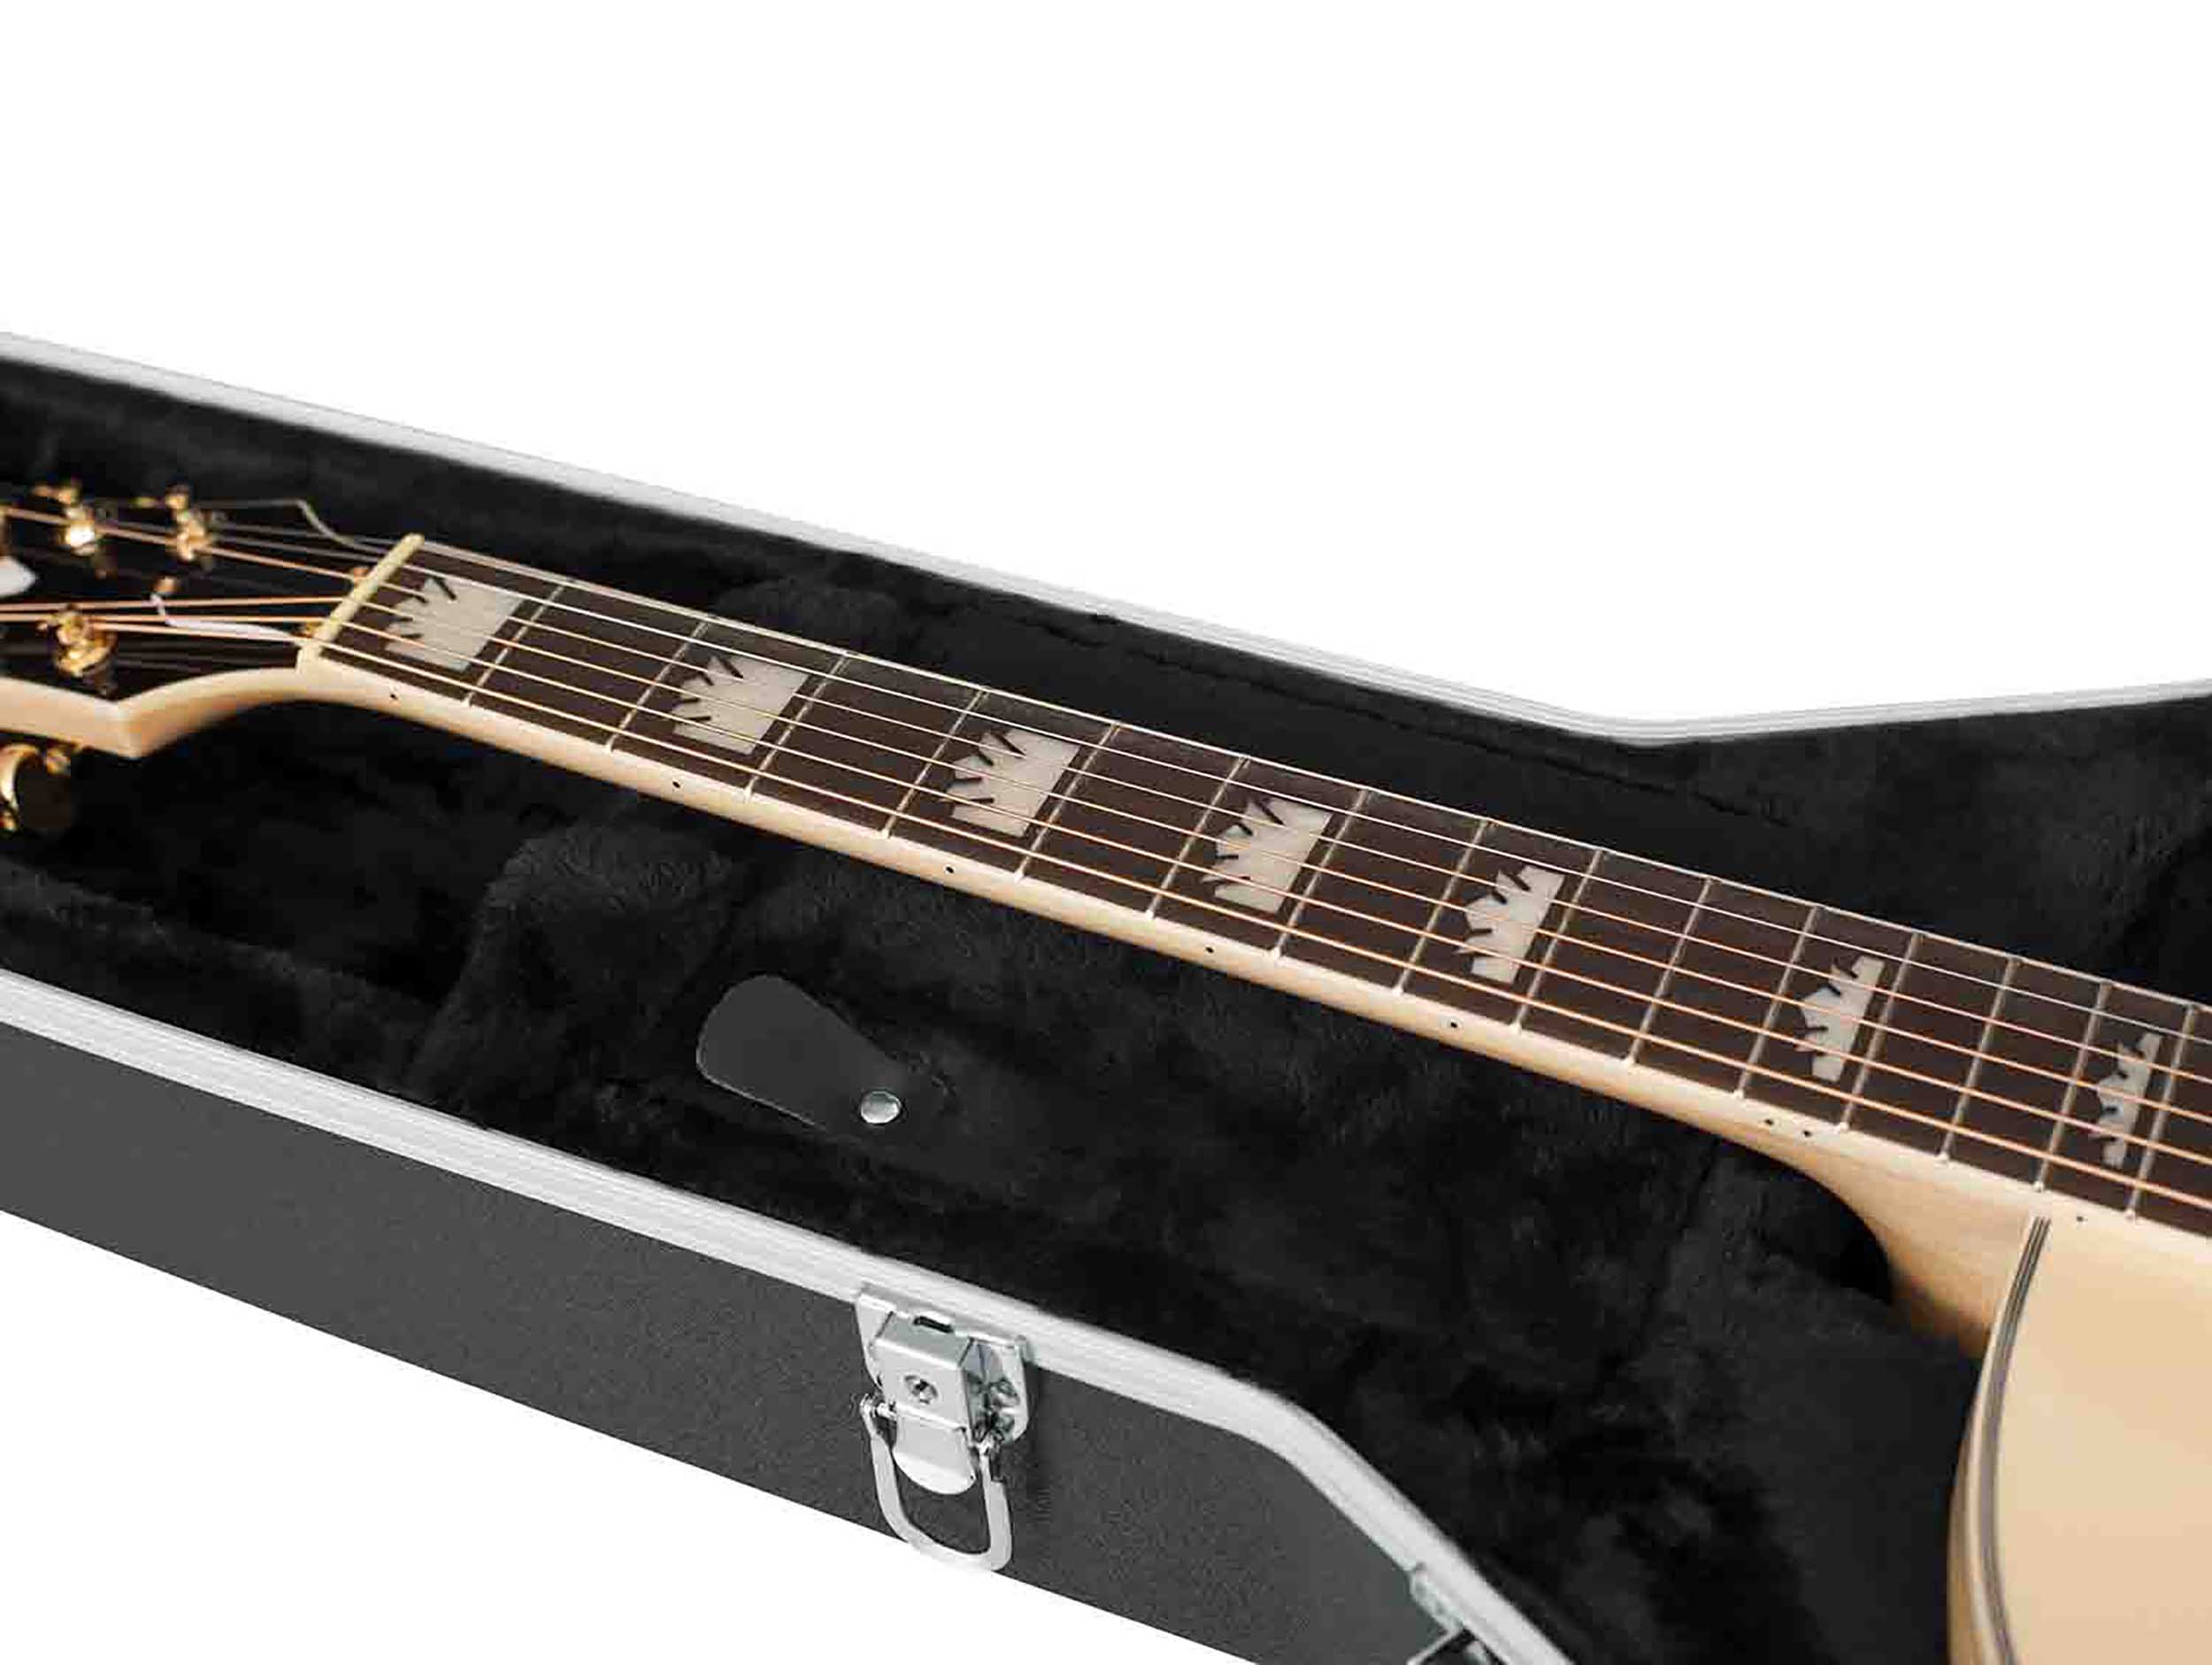 Gator Cases GC-JUMBO Deluxe Molded Guitar Case for Jumbo Acoustic Guitars